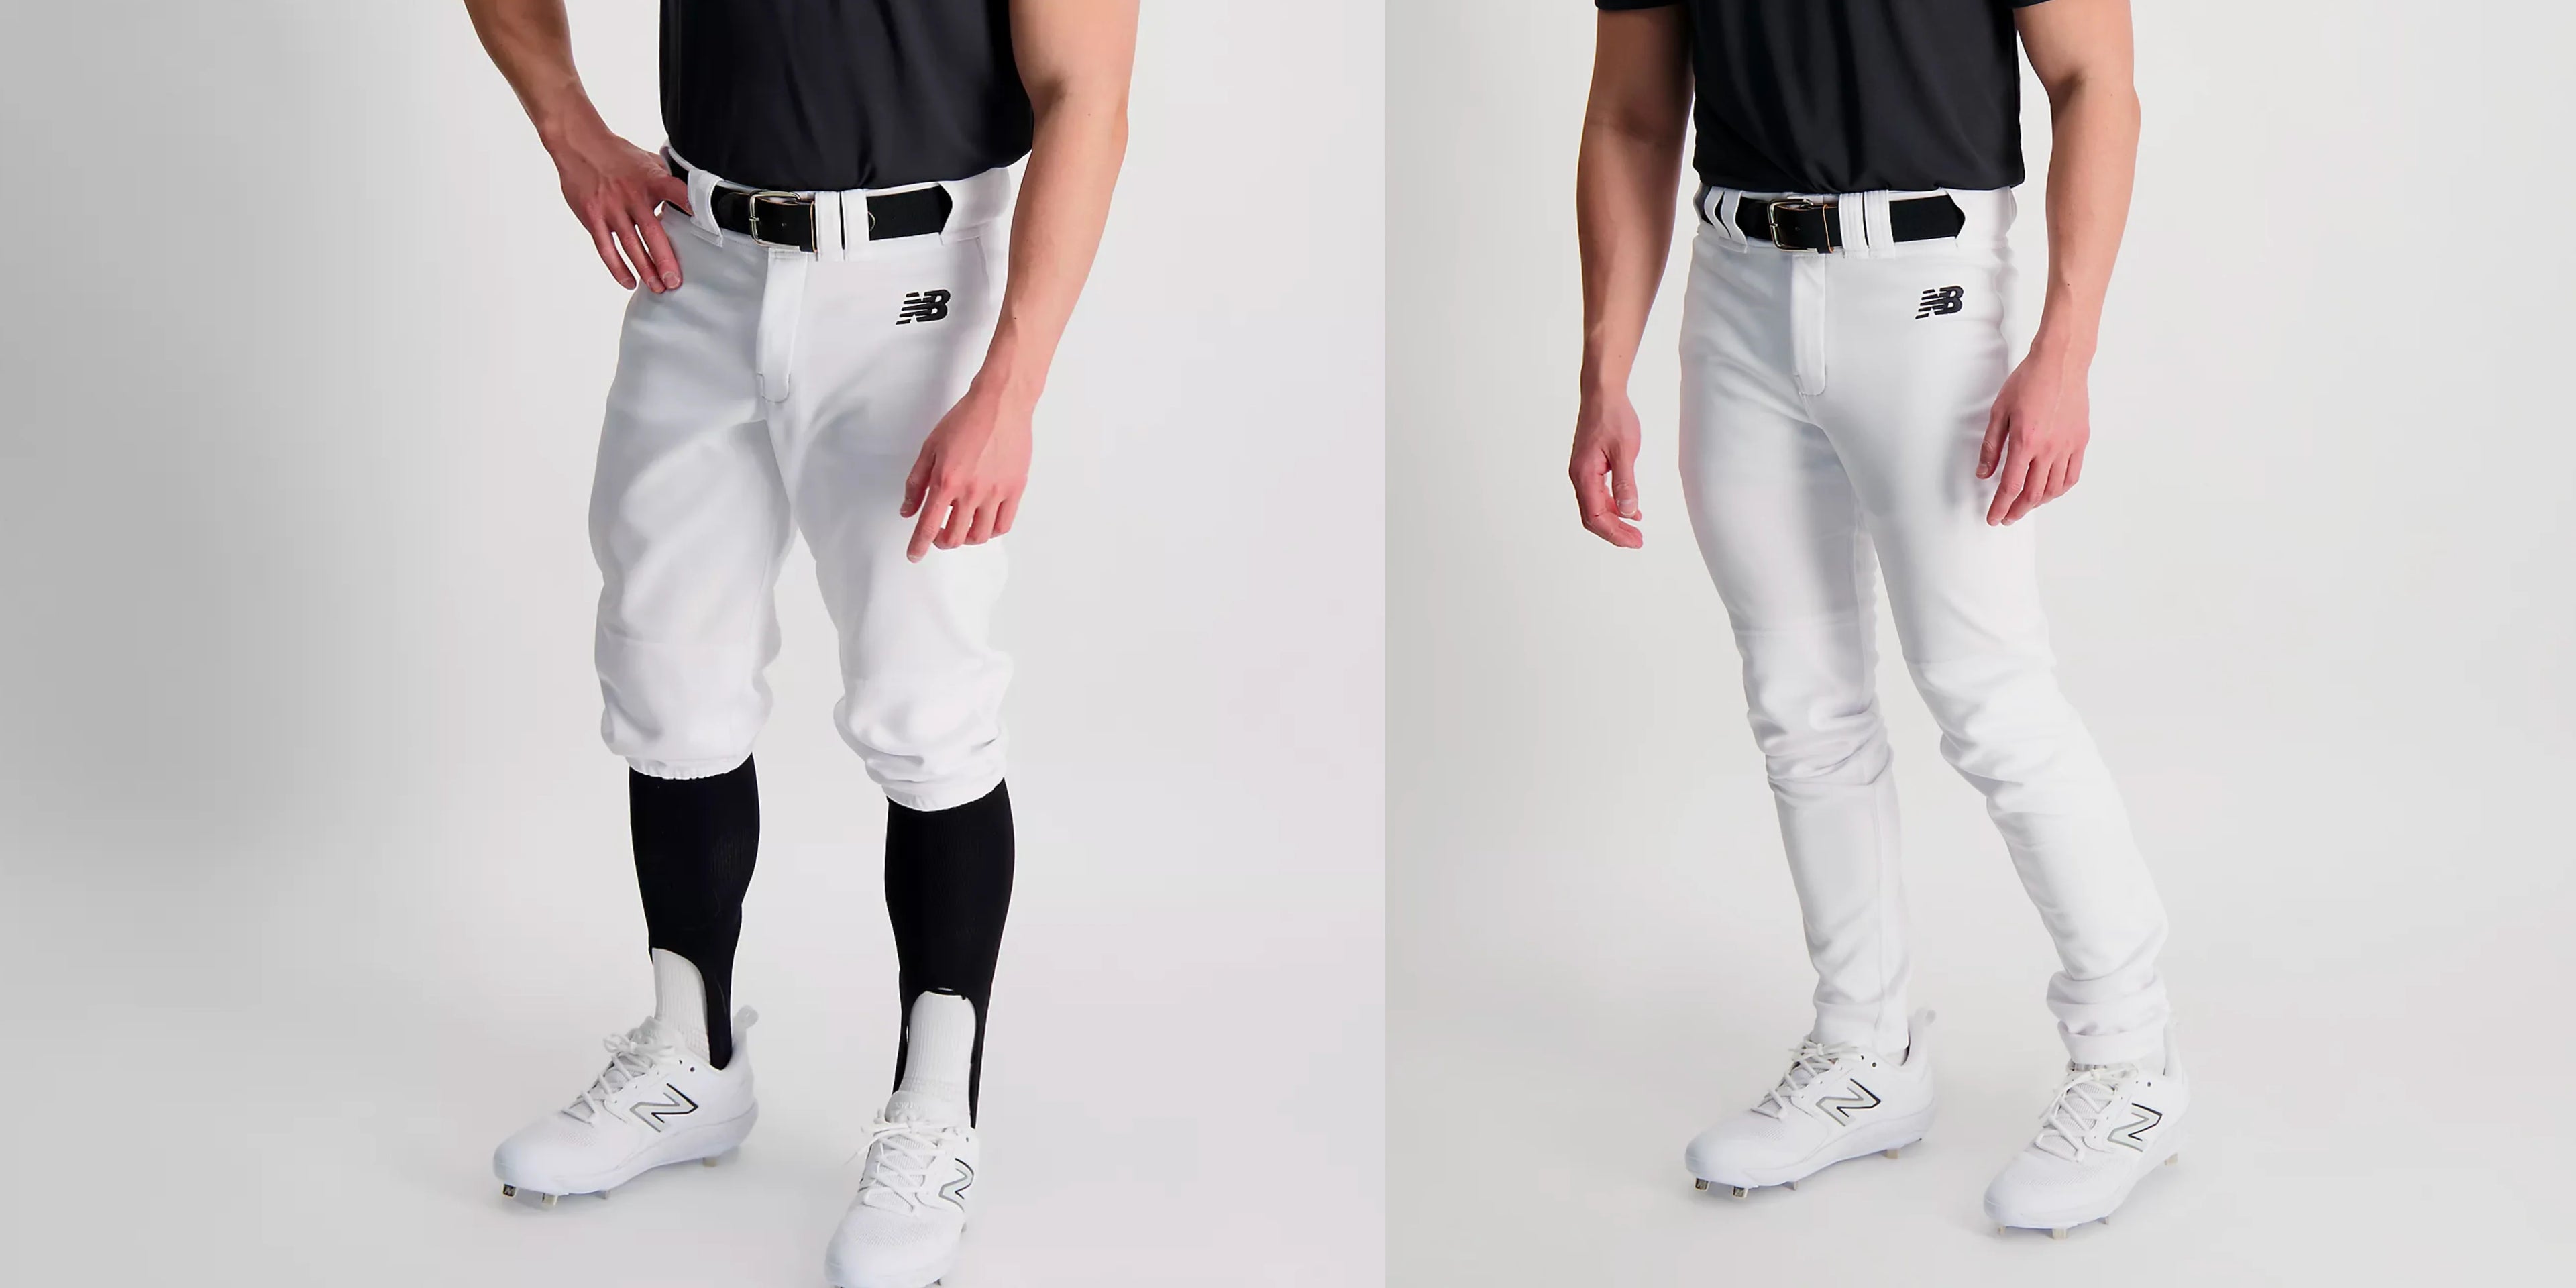 Youth Baseball Pants